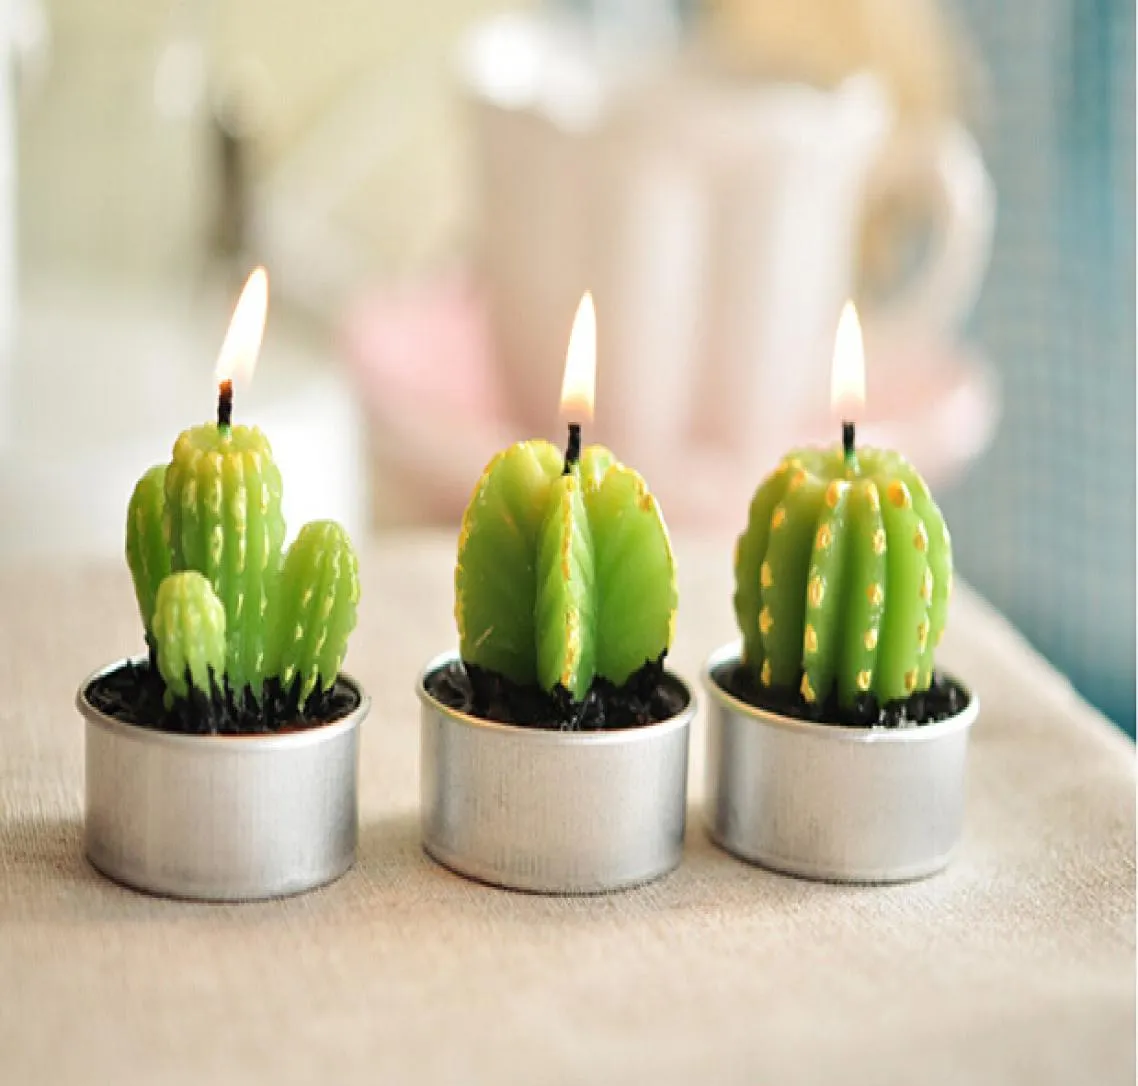 Cały rzadki mini kaktus świece rośliny dekoracje stolika domowego ogród 6pcllot kawaii dekoracja fabryka ekspertów projektowych kwalifikacje 36333460